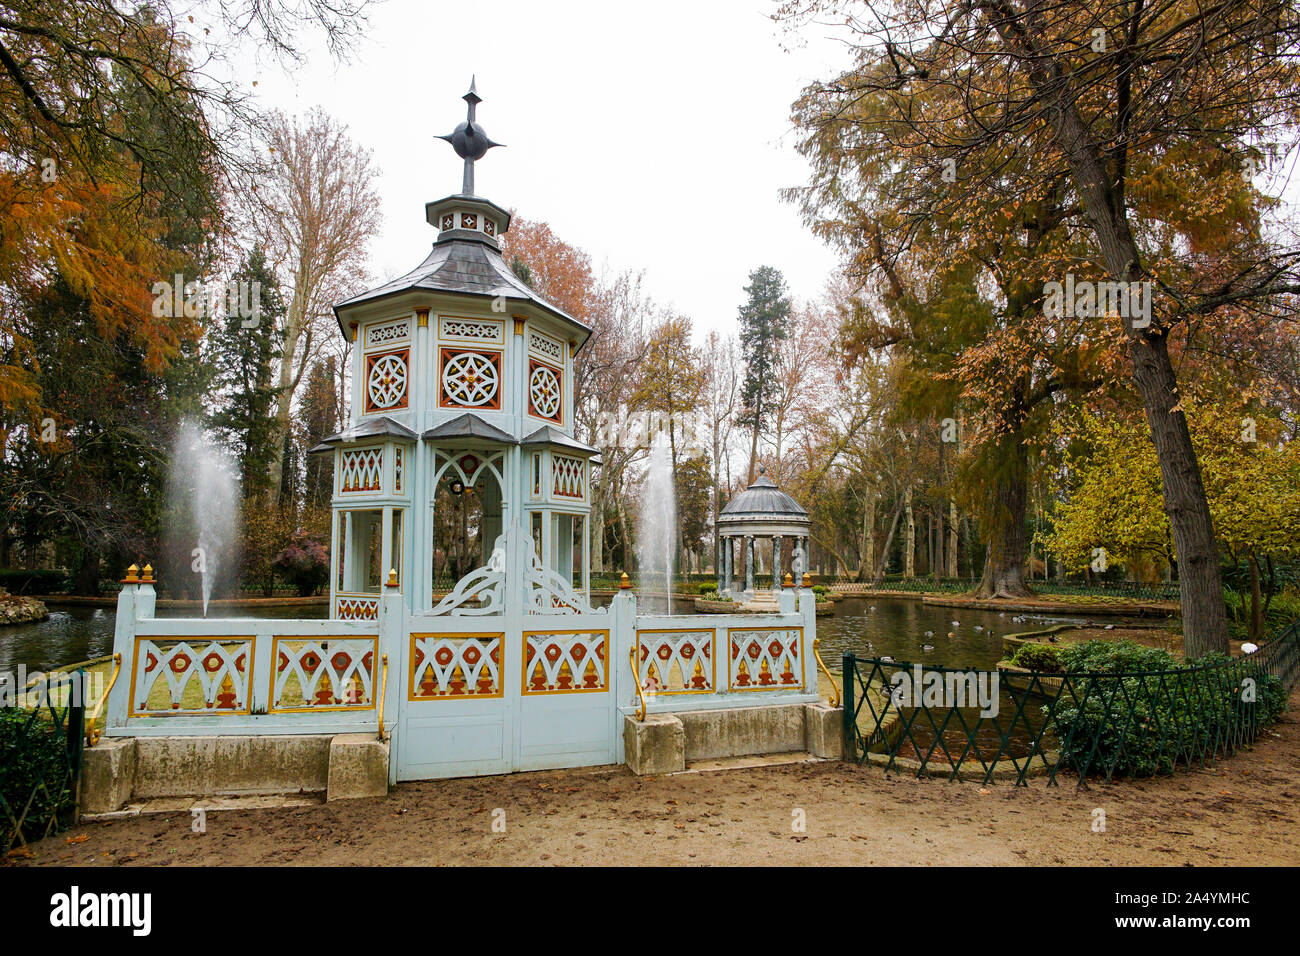 Chinesco garden. Gardens of Aranjuez, Madrid. Spain Stock Photo